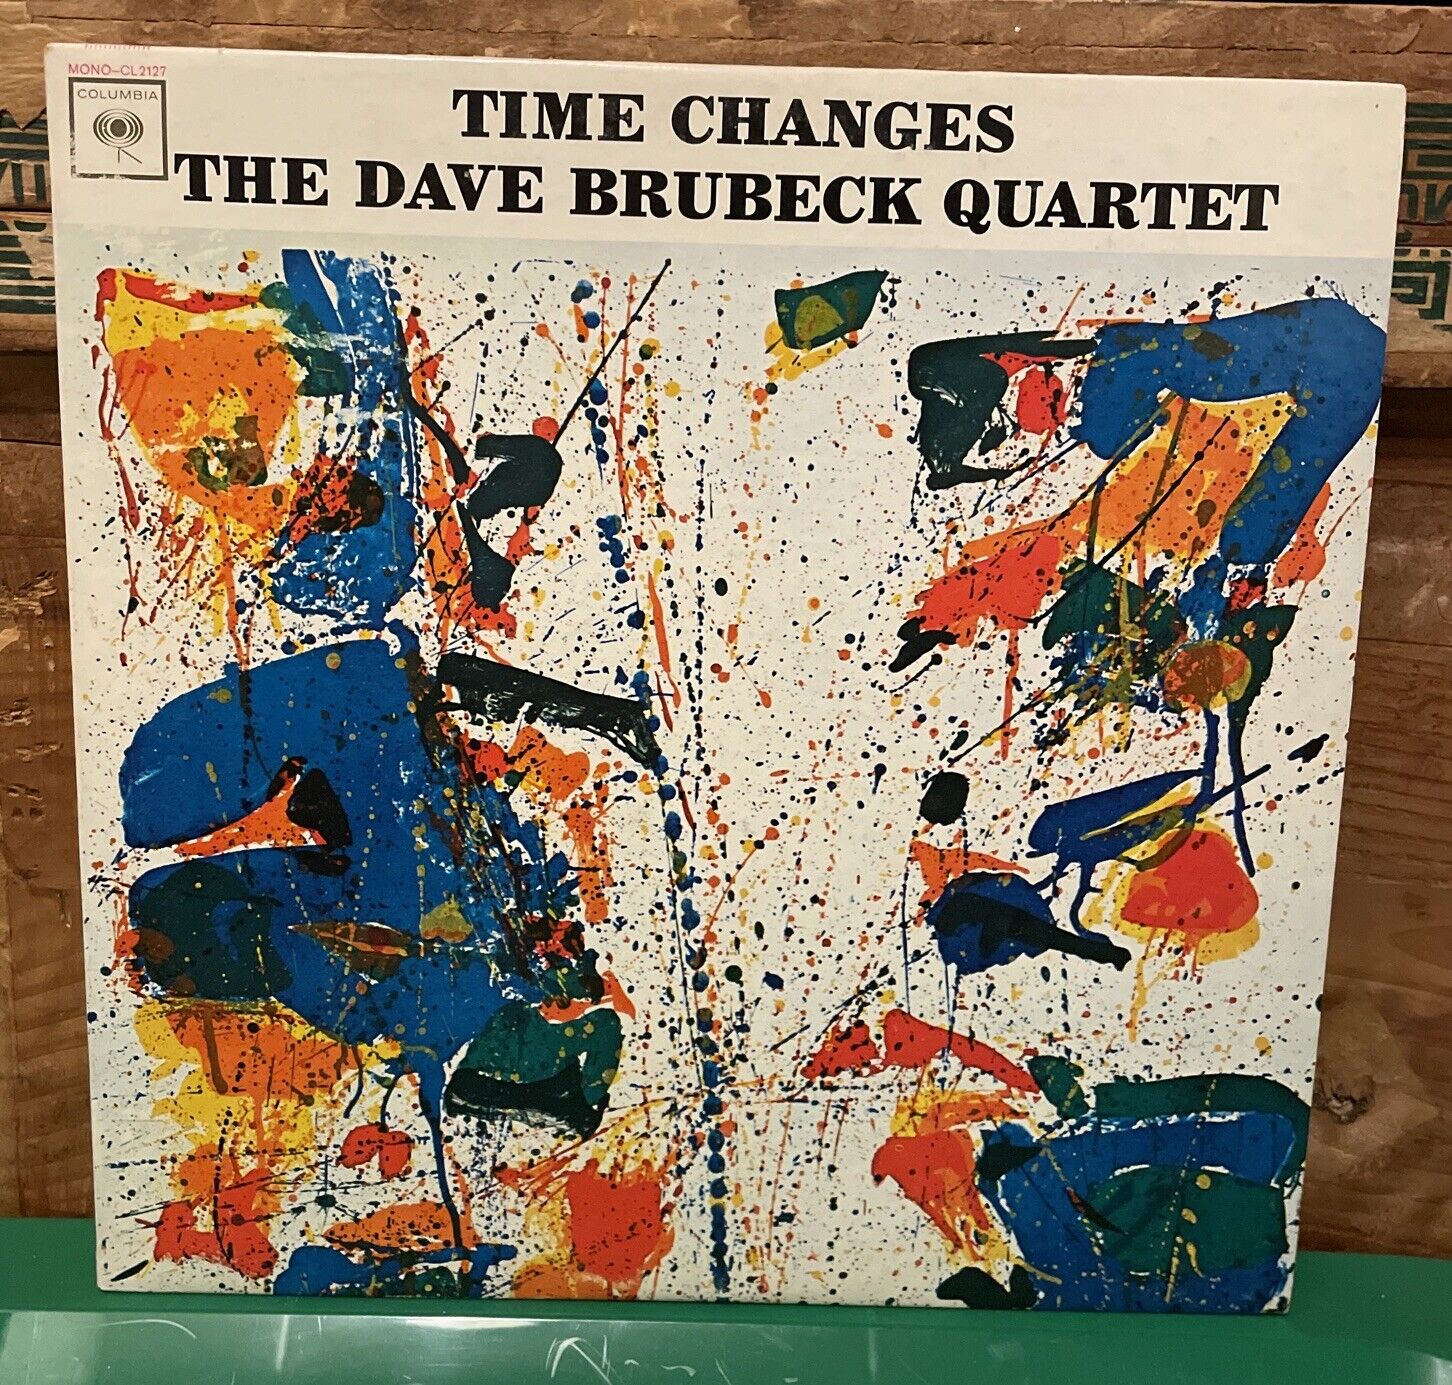 The Dave Brubeck Quartet Time Changes Lp Mono Cl2127